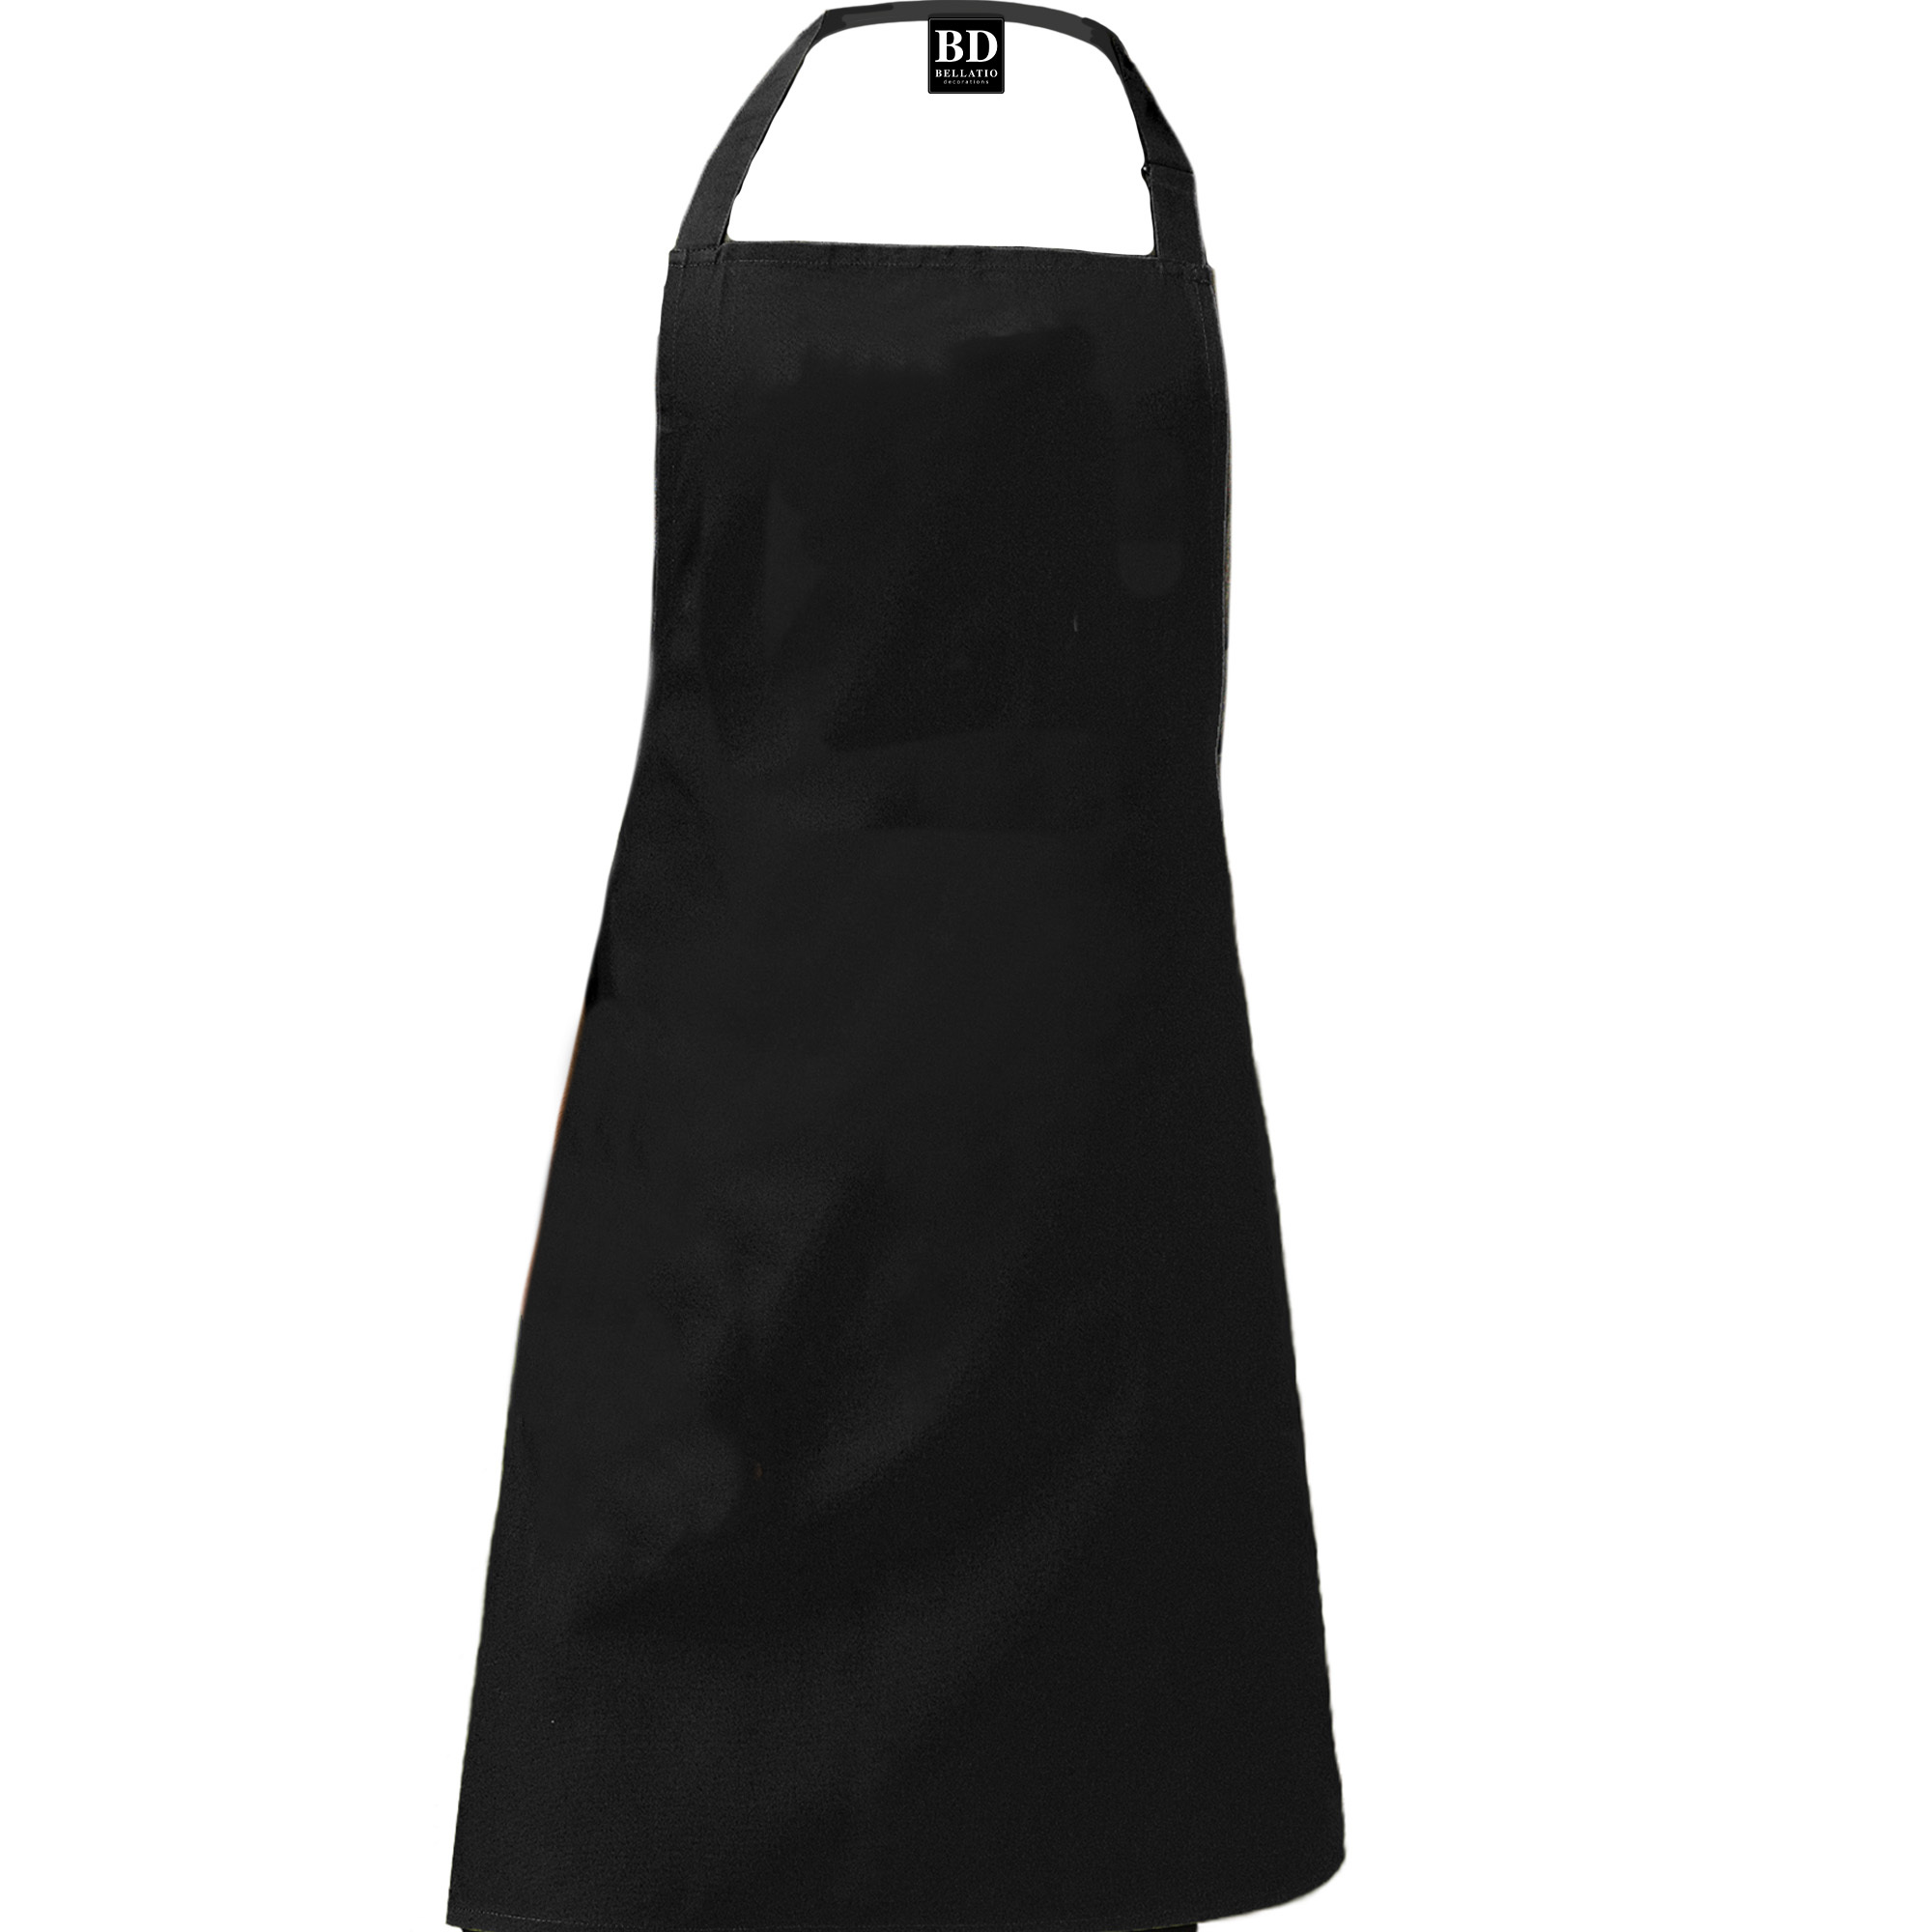 Queen of the kitchen Carmen keukenschort/ barbecue schort zwart voor dames